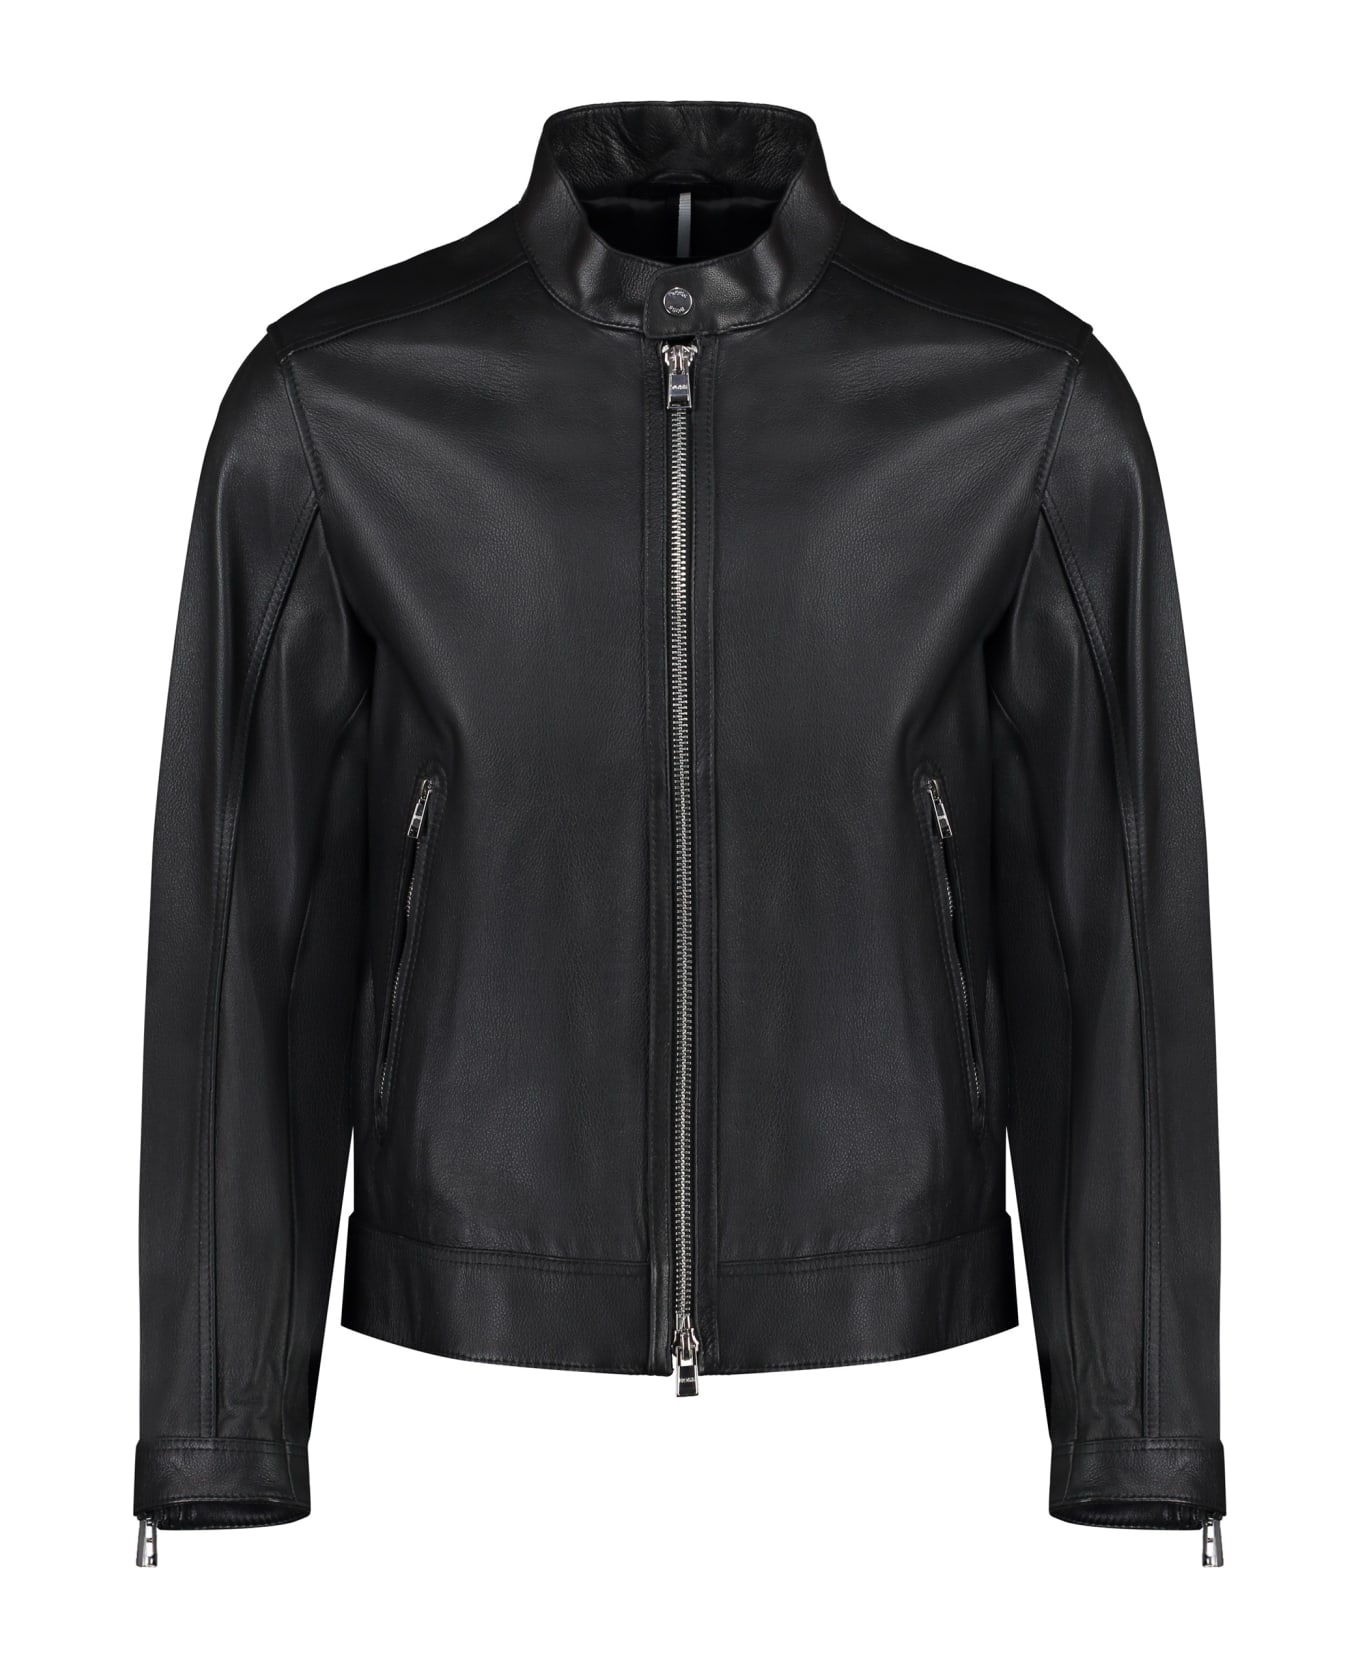 Hugo Boss Leather Jacket - Black